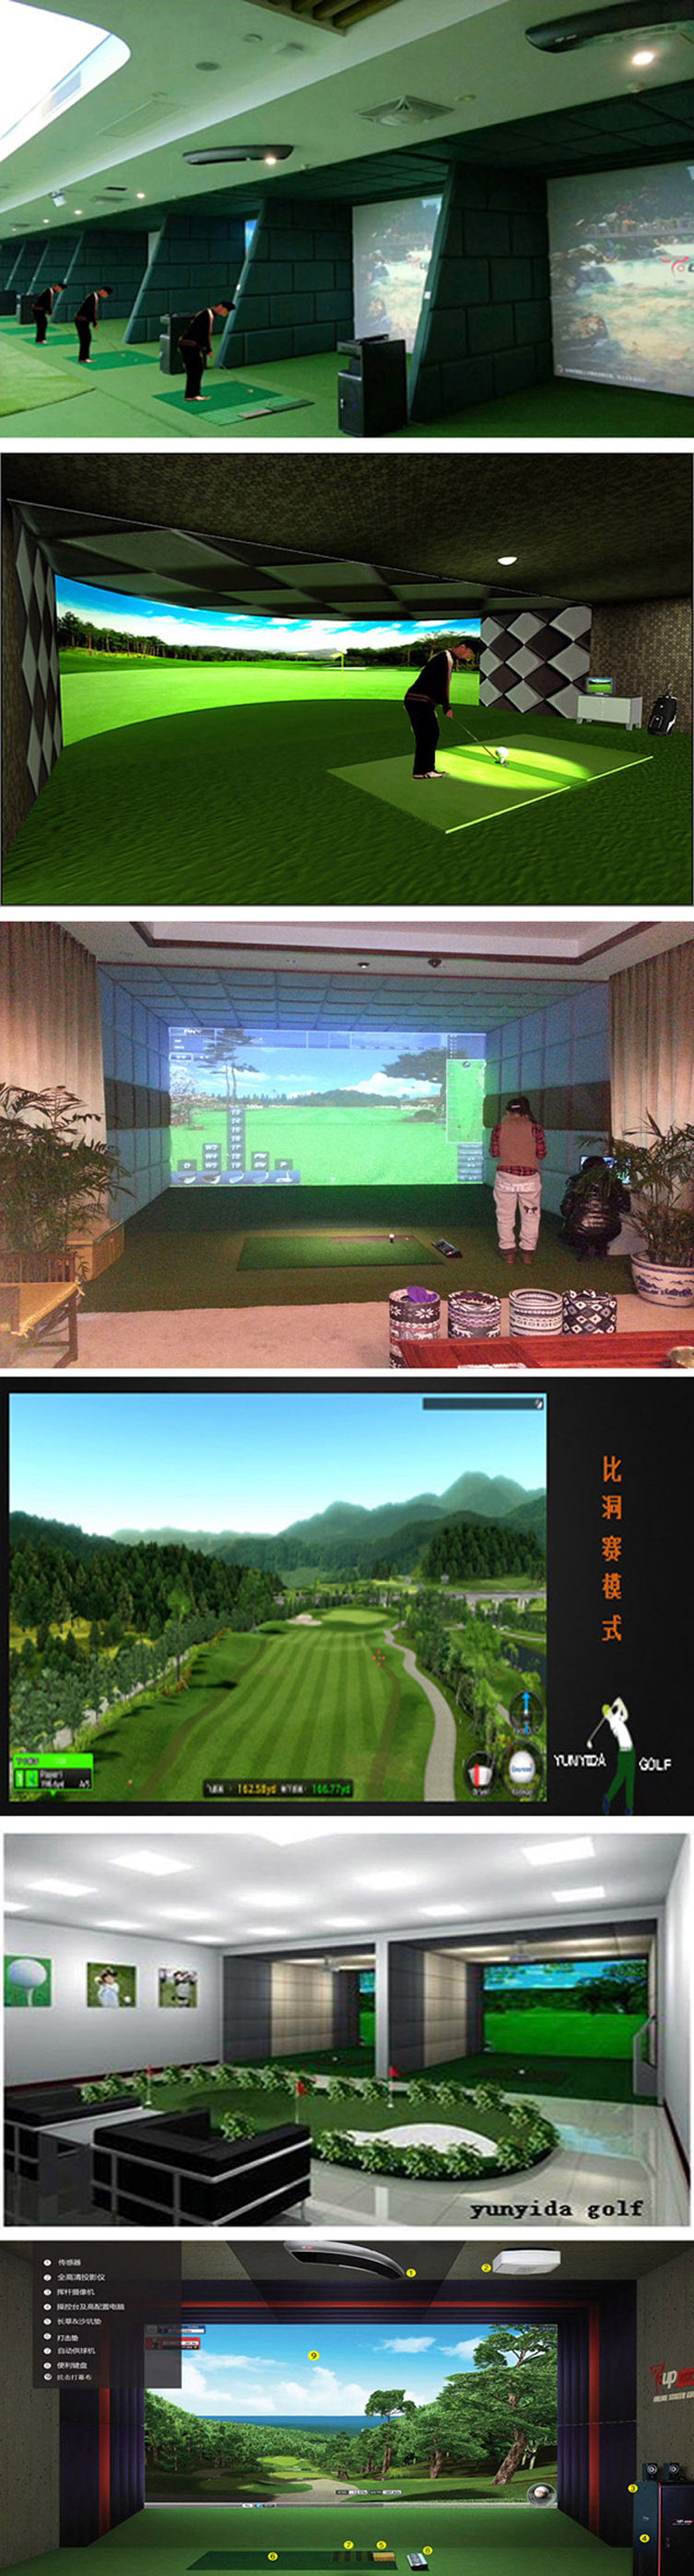 高尔夫模拟系统练习 二.jpg